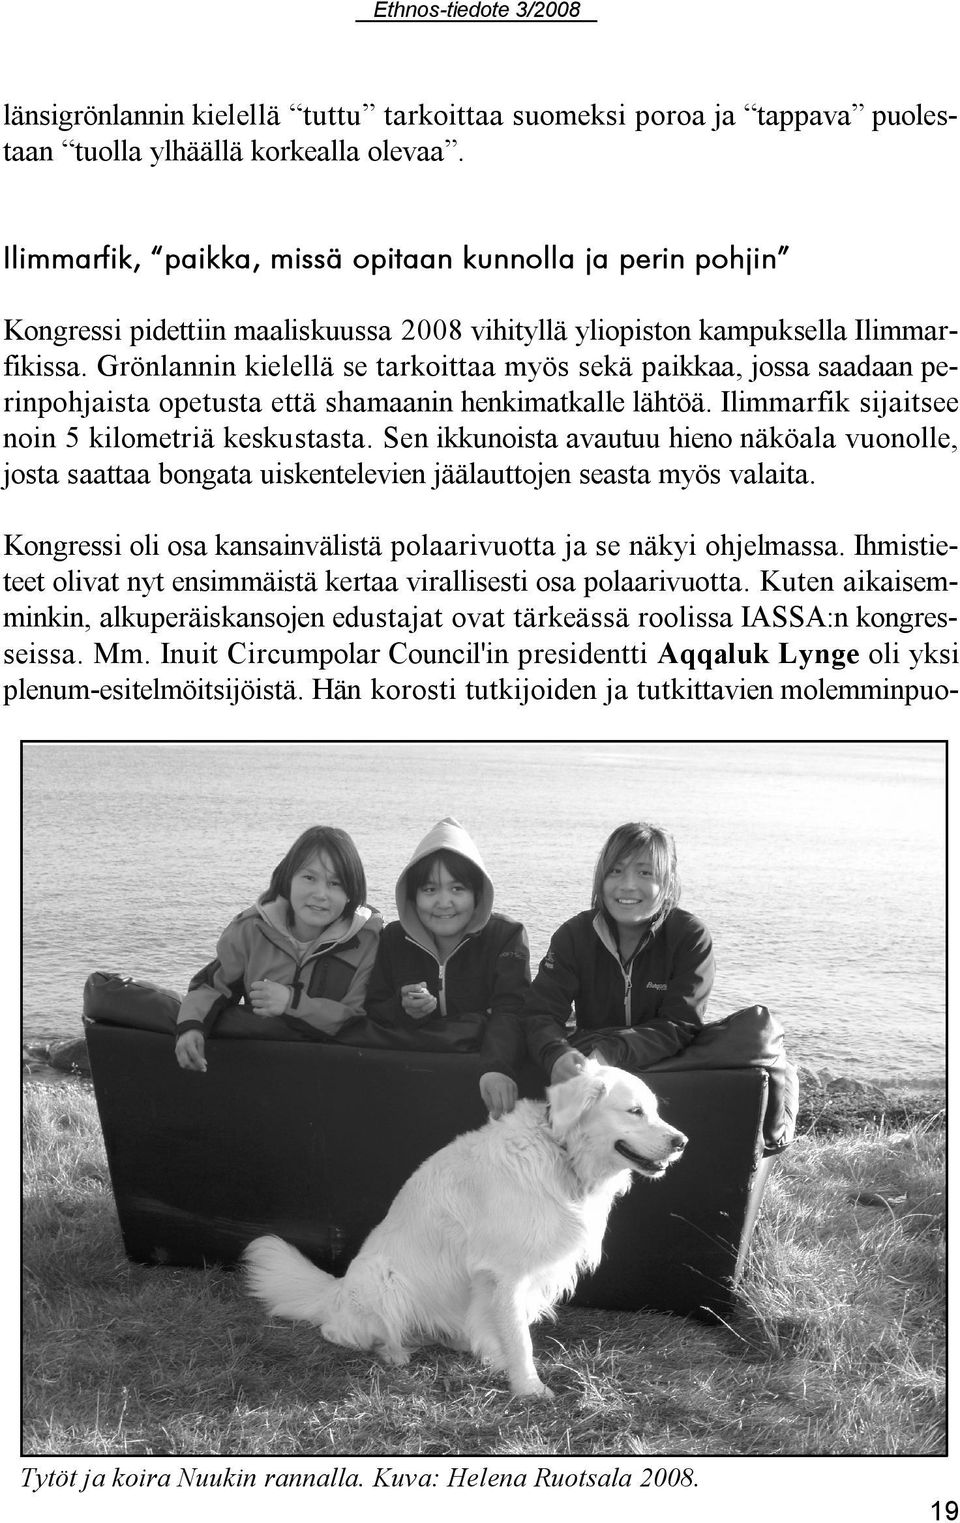 Grönlannin kielellä se tarkoittaa myös sekä paikkaa, jossa saadaan perinpohjaista opetusta että shamaanin henkimatkalle lähtöä. Ilimmarfik sijaitsee noin 5 kilometriä keskustasta.